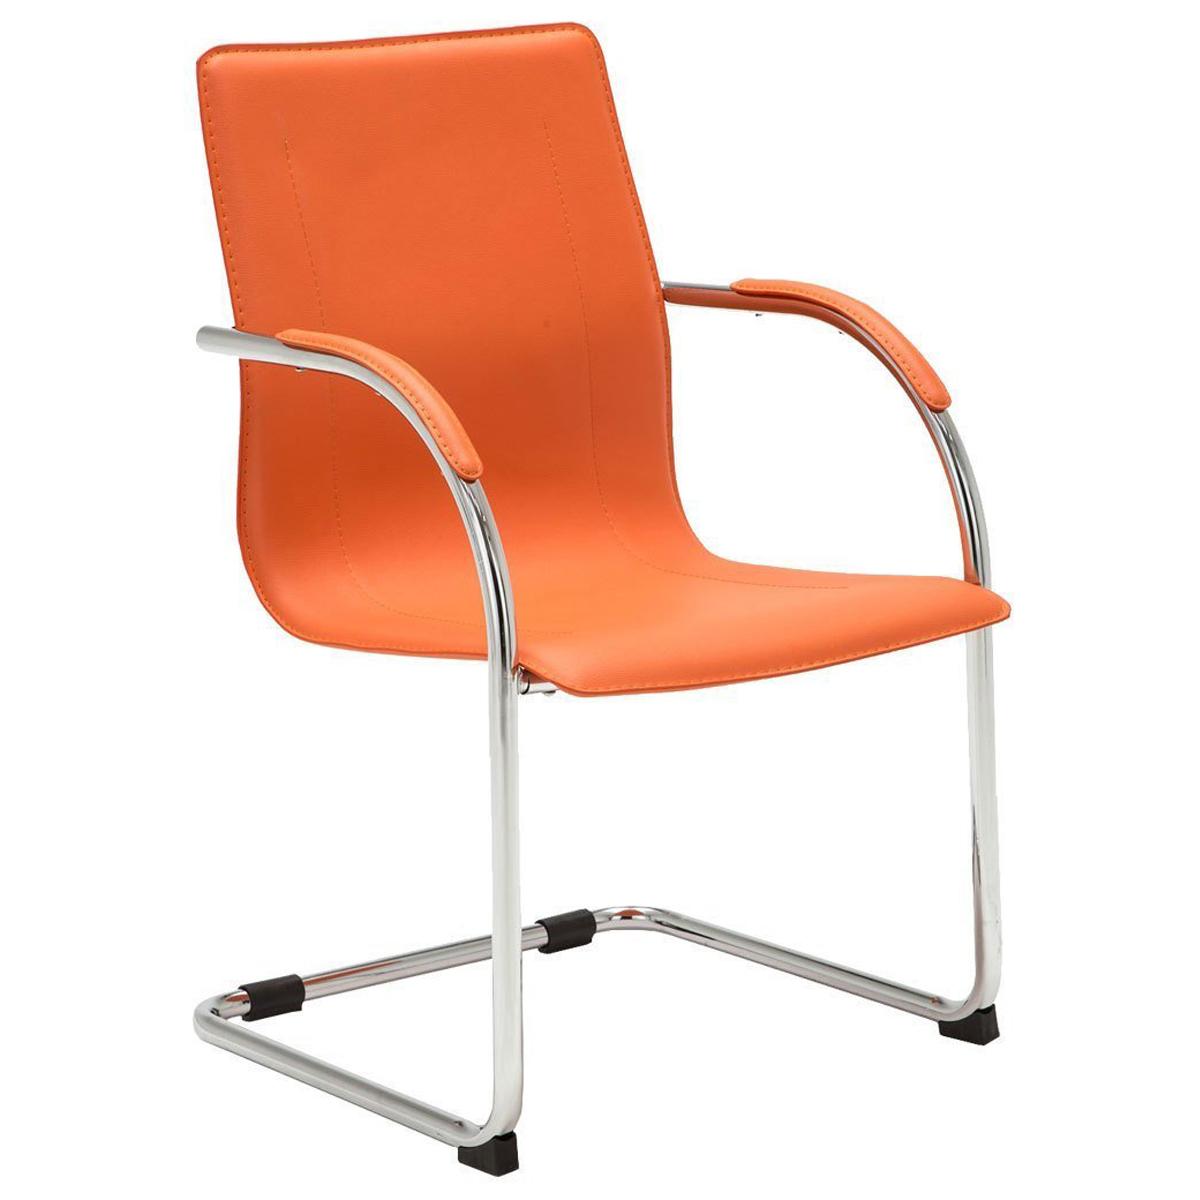 Silla de Confidente FLAP, Estructura Metálica, Elegante y Moderno Diseño en Piel color Naranja